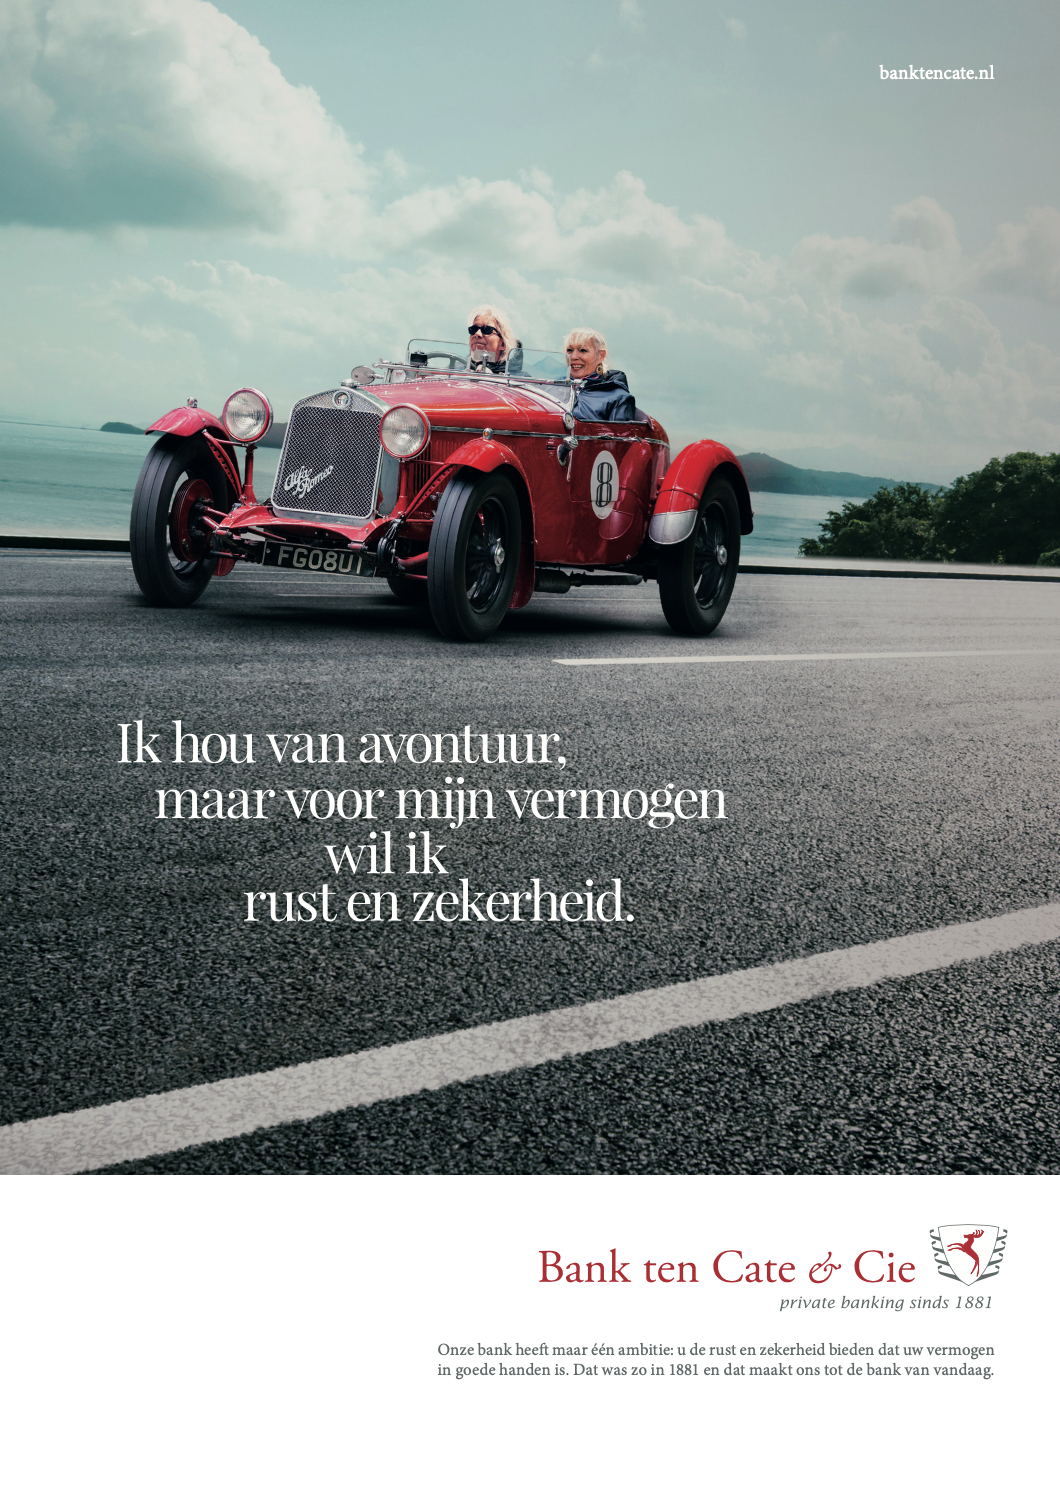 Corporate campagne Bank ten Cate & Cie door communicatiebureau Buro Jung Haarlem